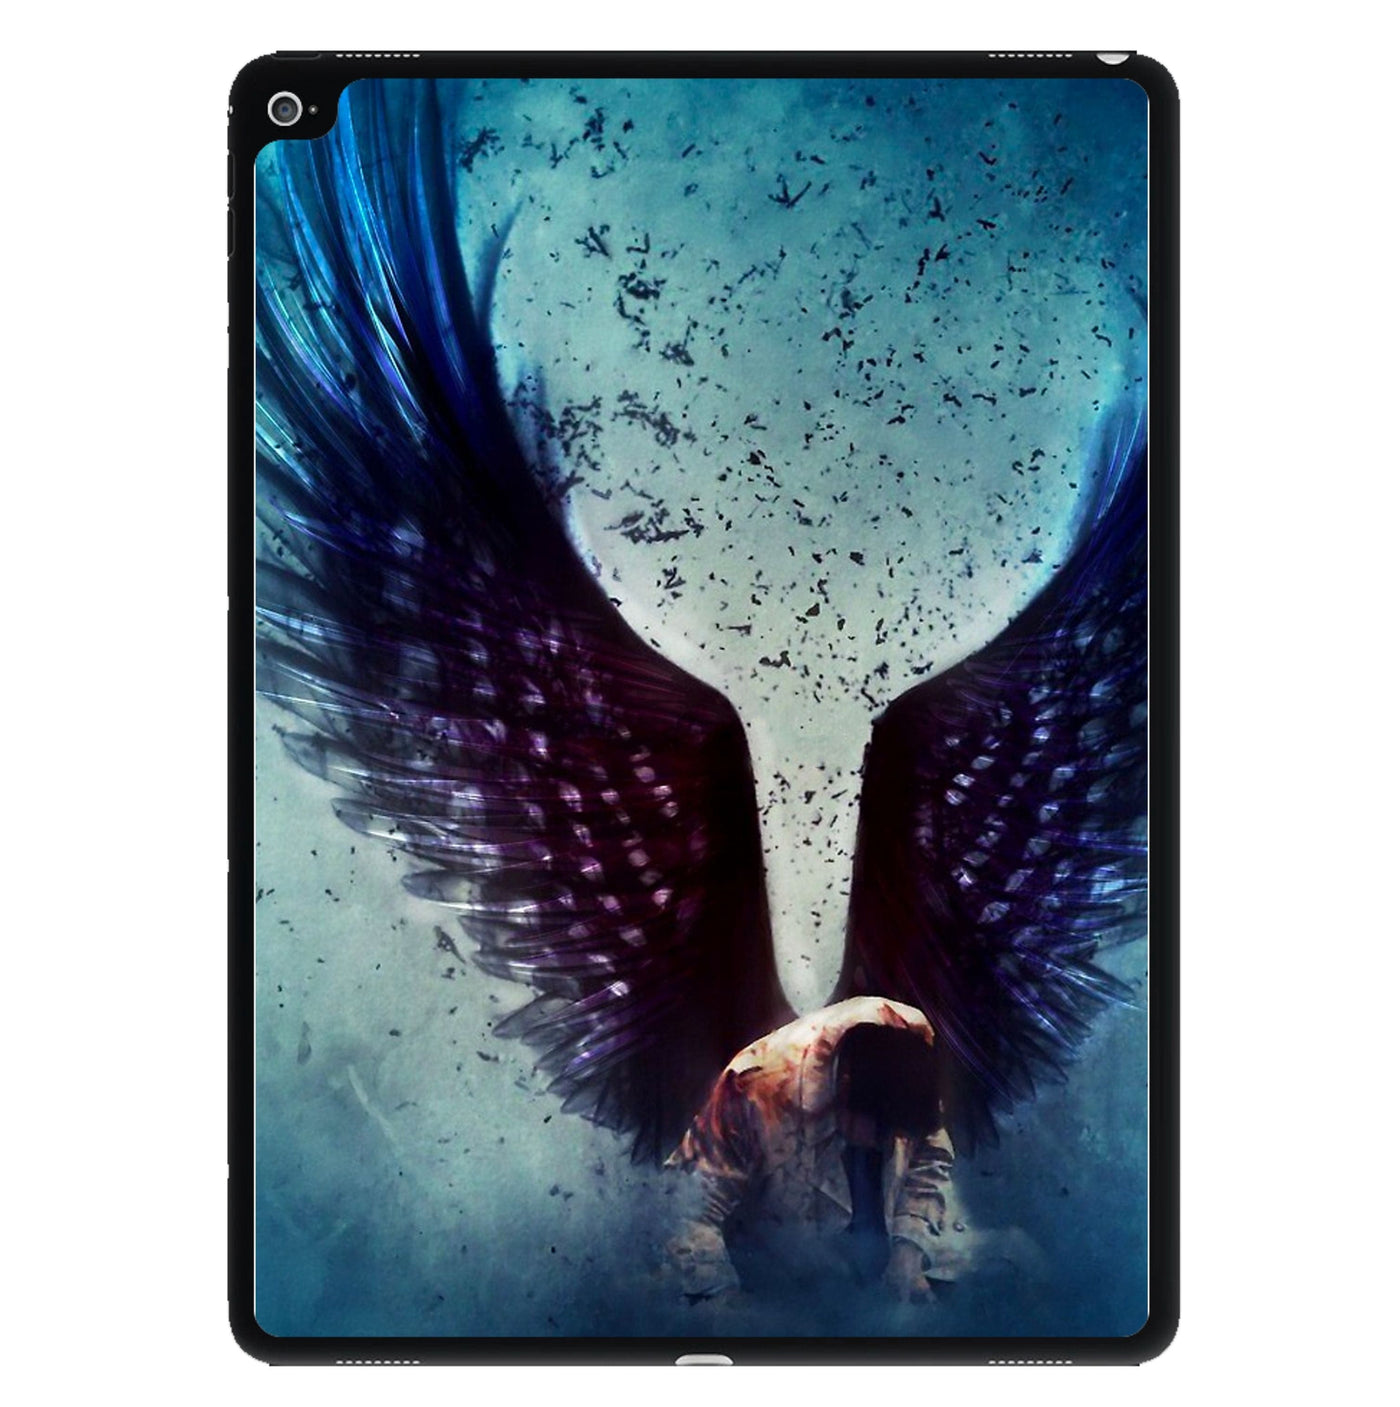 Fallen - Supernatural iPad Case